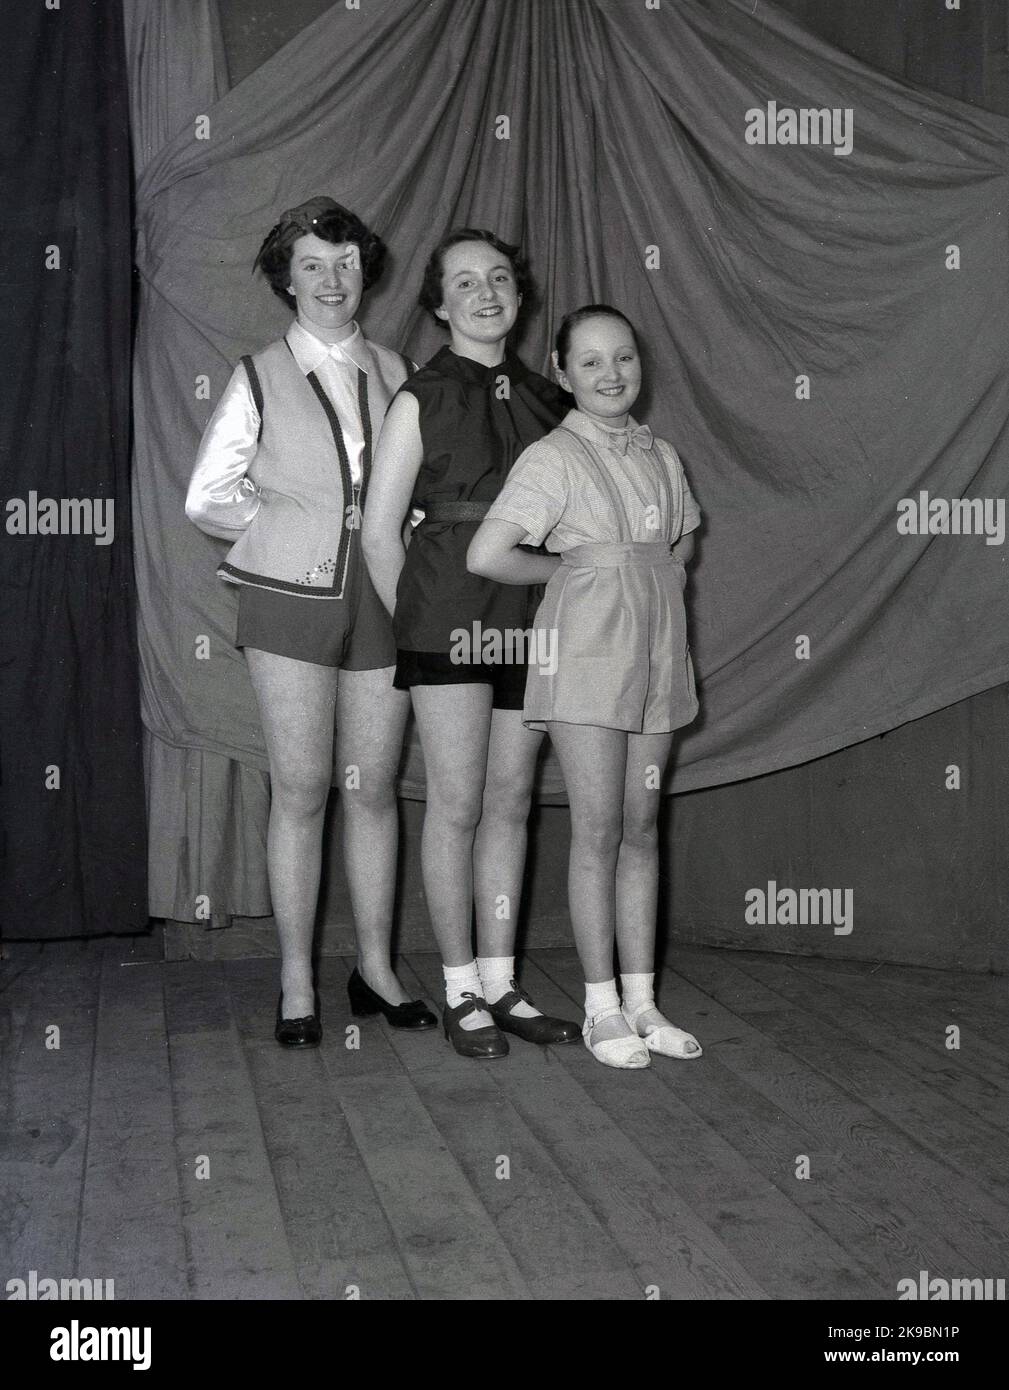 1955, storico, febbraio, tre ragazze che appaiono nel pantomino, Robin Hood, posando su un palco di legno nei loro costumi per una foto, Leeds, Inghilterra, Regno Unito. Foto Stock